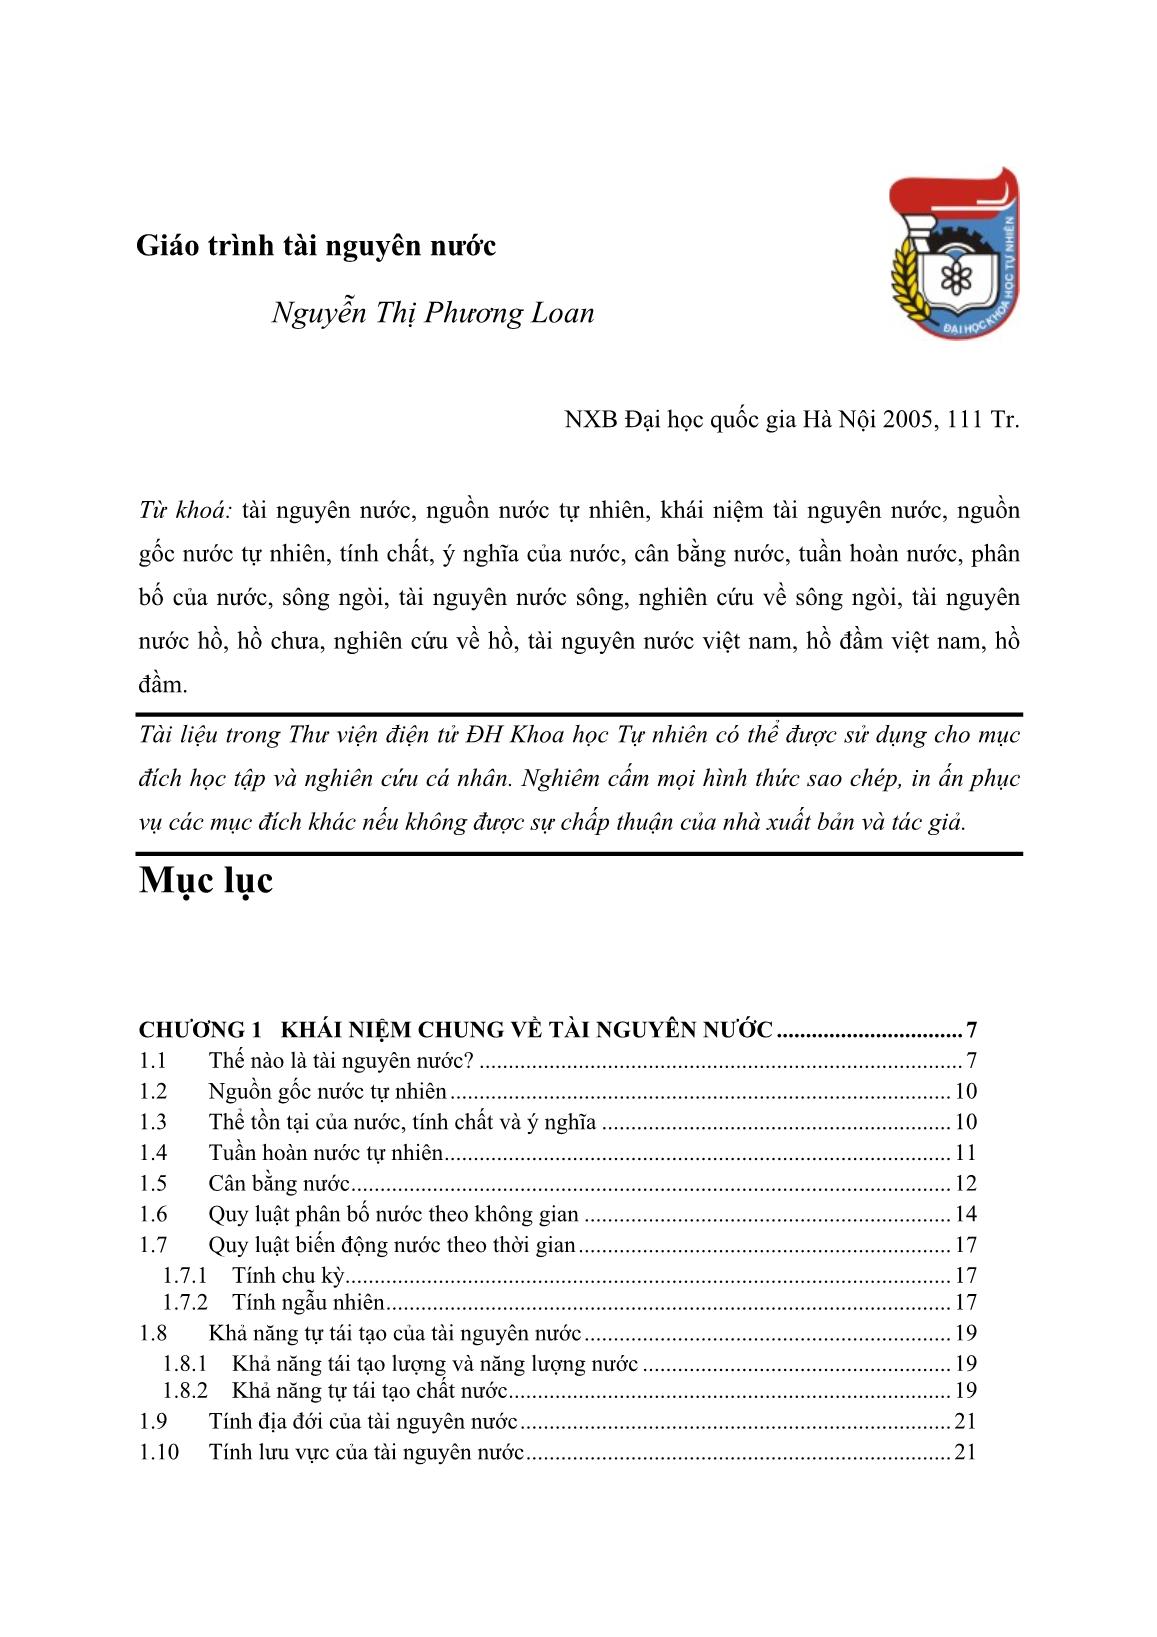 Giáo trình Tài nguyên nước - Nguyễn Thị Phương Loan trang 1